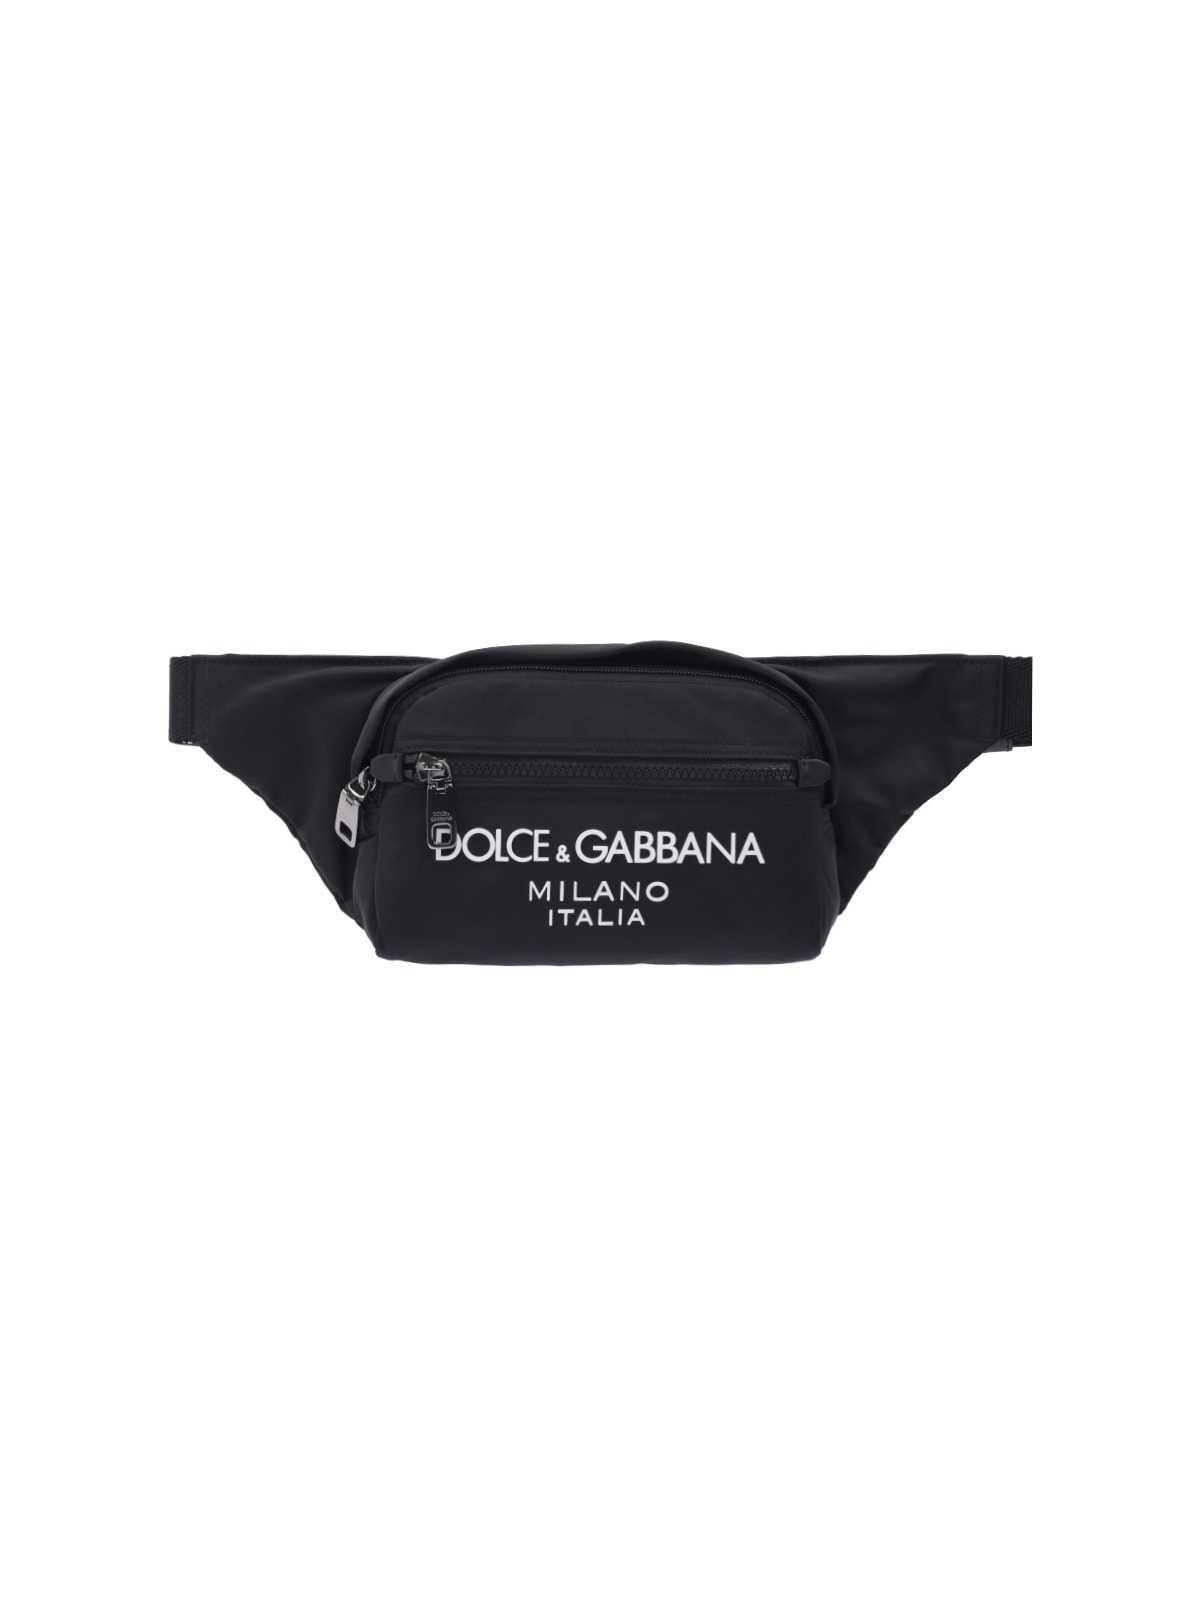 Dolce & Gabbana Logo Fanny Pack